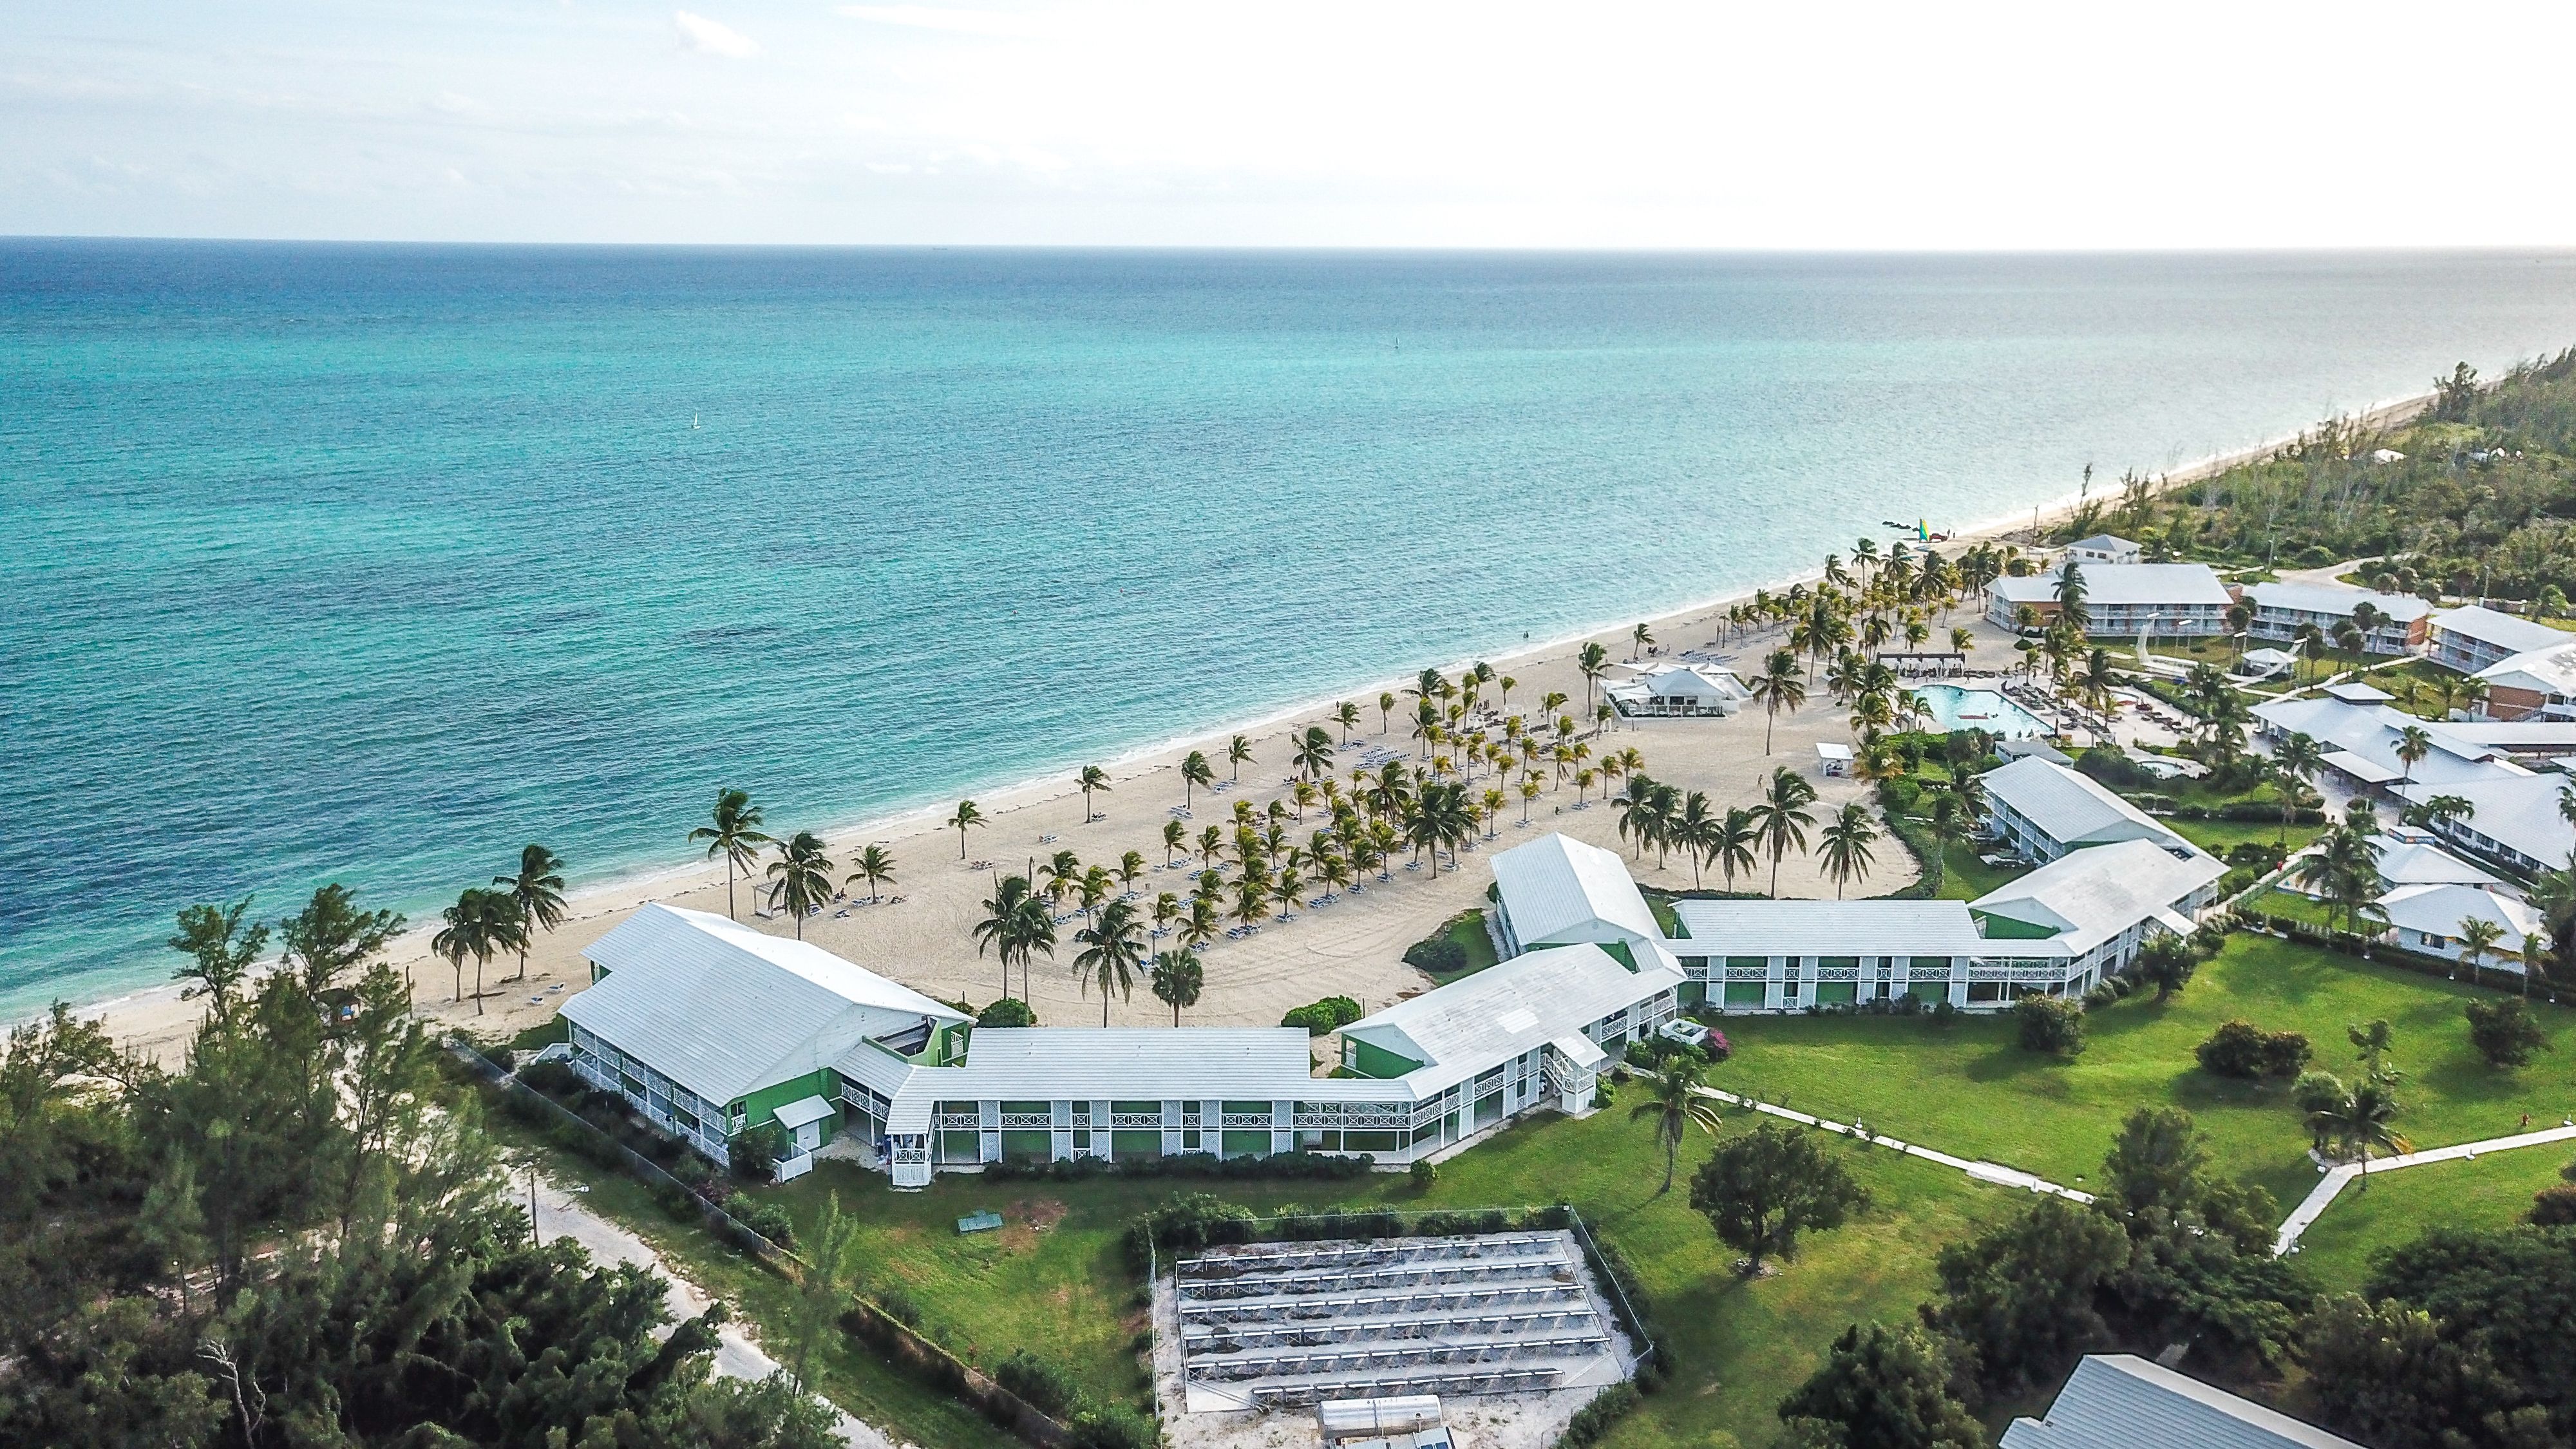 Viva Fortuna Beach Resort in the Bahamas